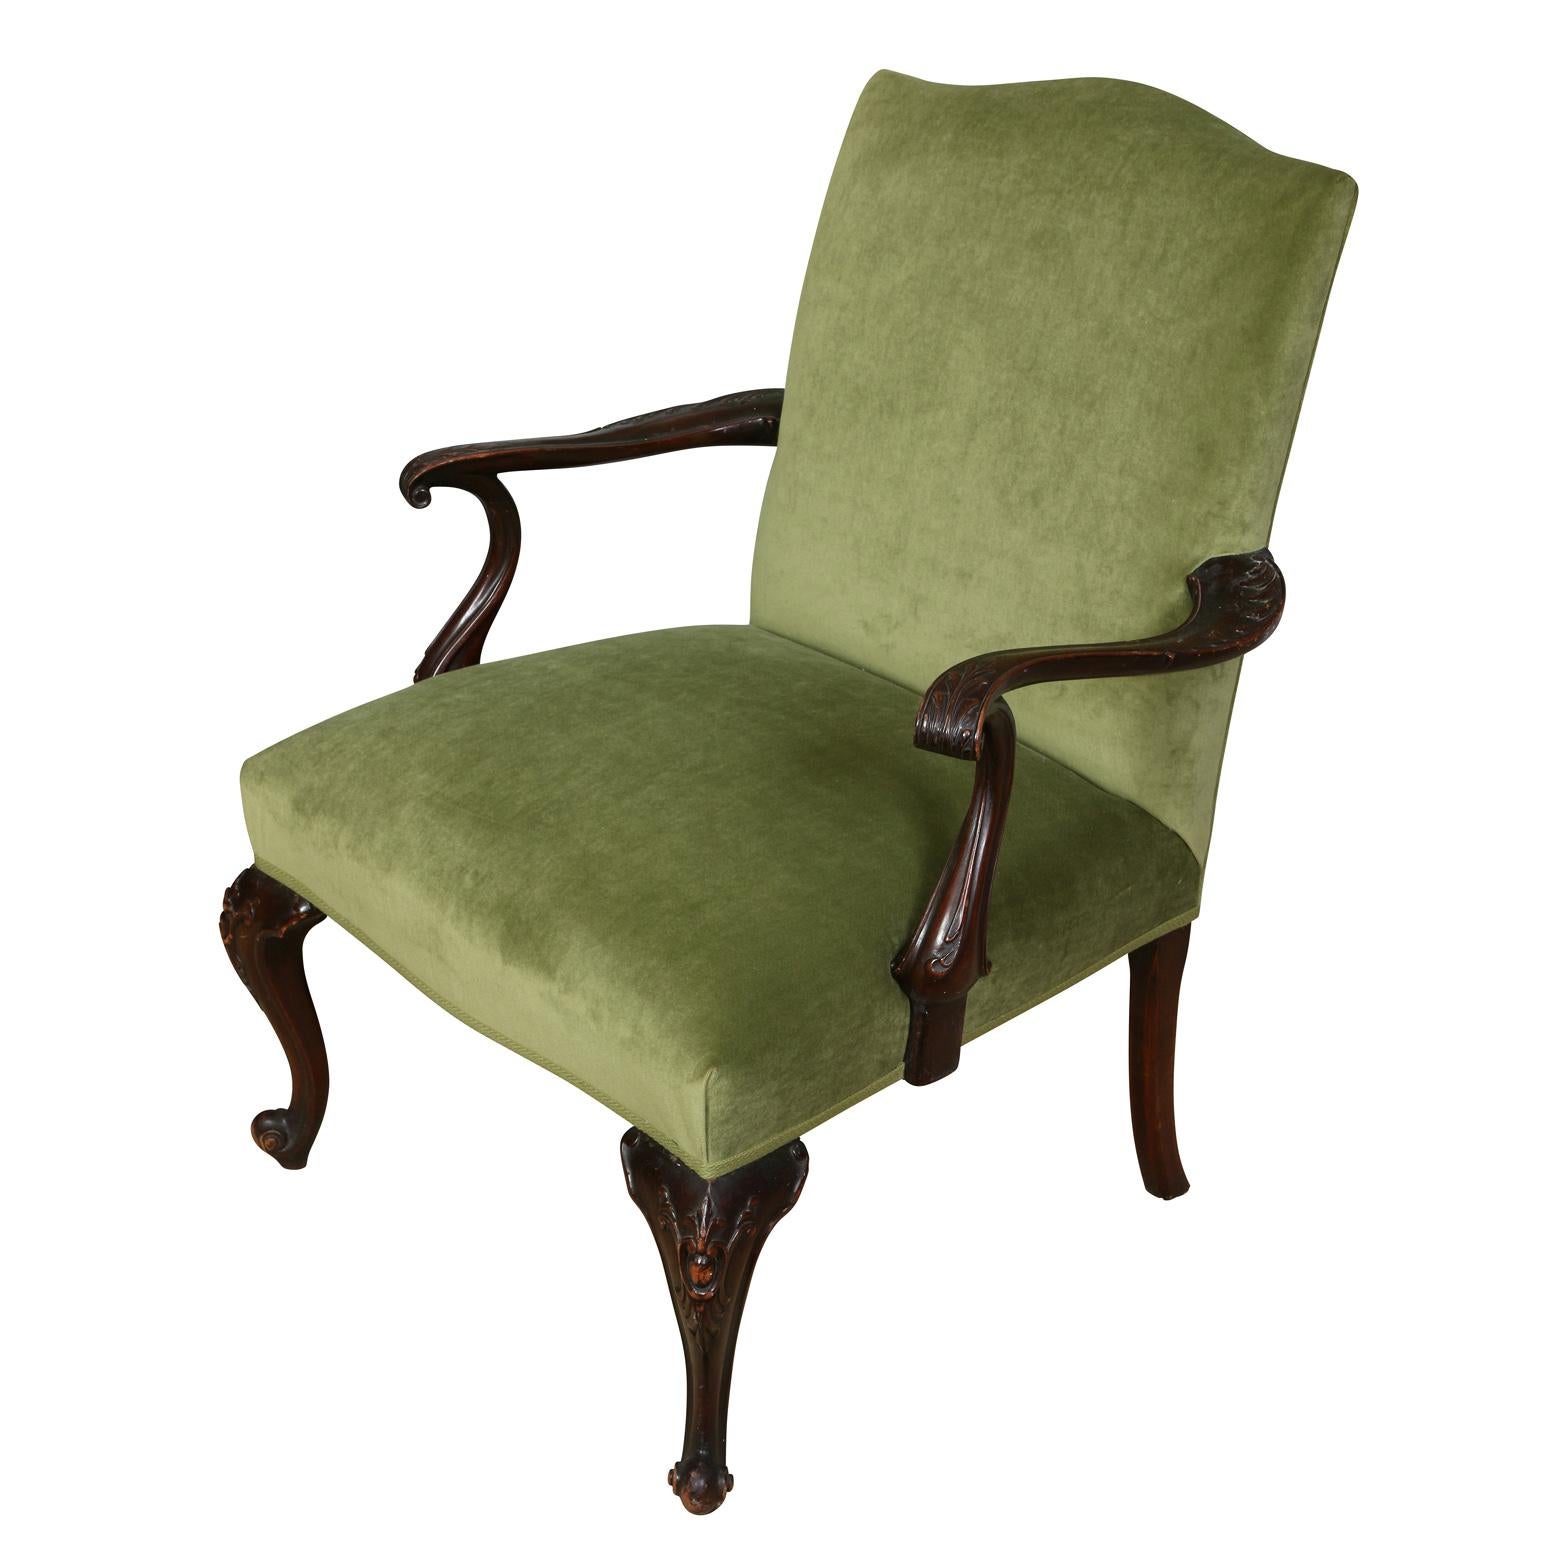 Ein Vintage-Stuhl im Chippendale-Stil, neu gepolstert mit reichem grünen Samt, mit detailliert geschnitzten und geschwungenen Scroll-Armen und Cabriole-Beinen.